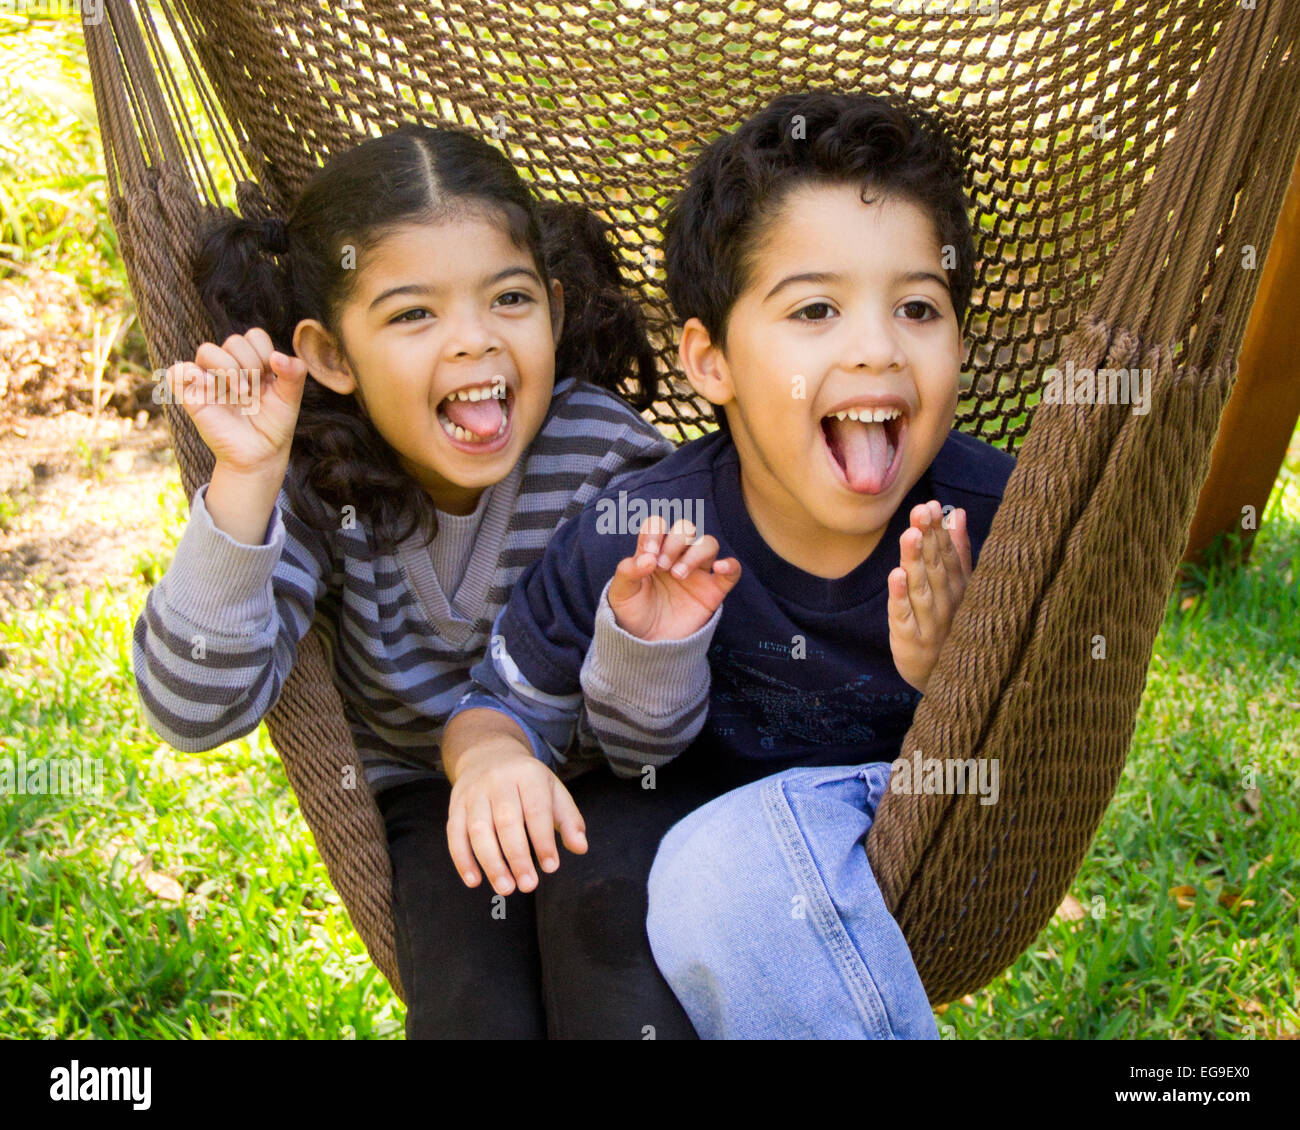 Hermano y hermana gemela sentado en una hamaca tirando funny faces Foto de stock